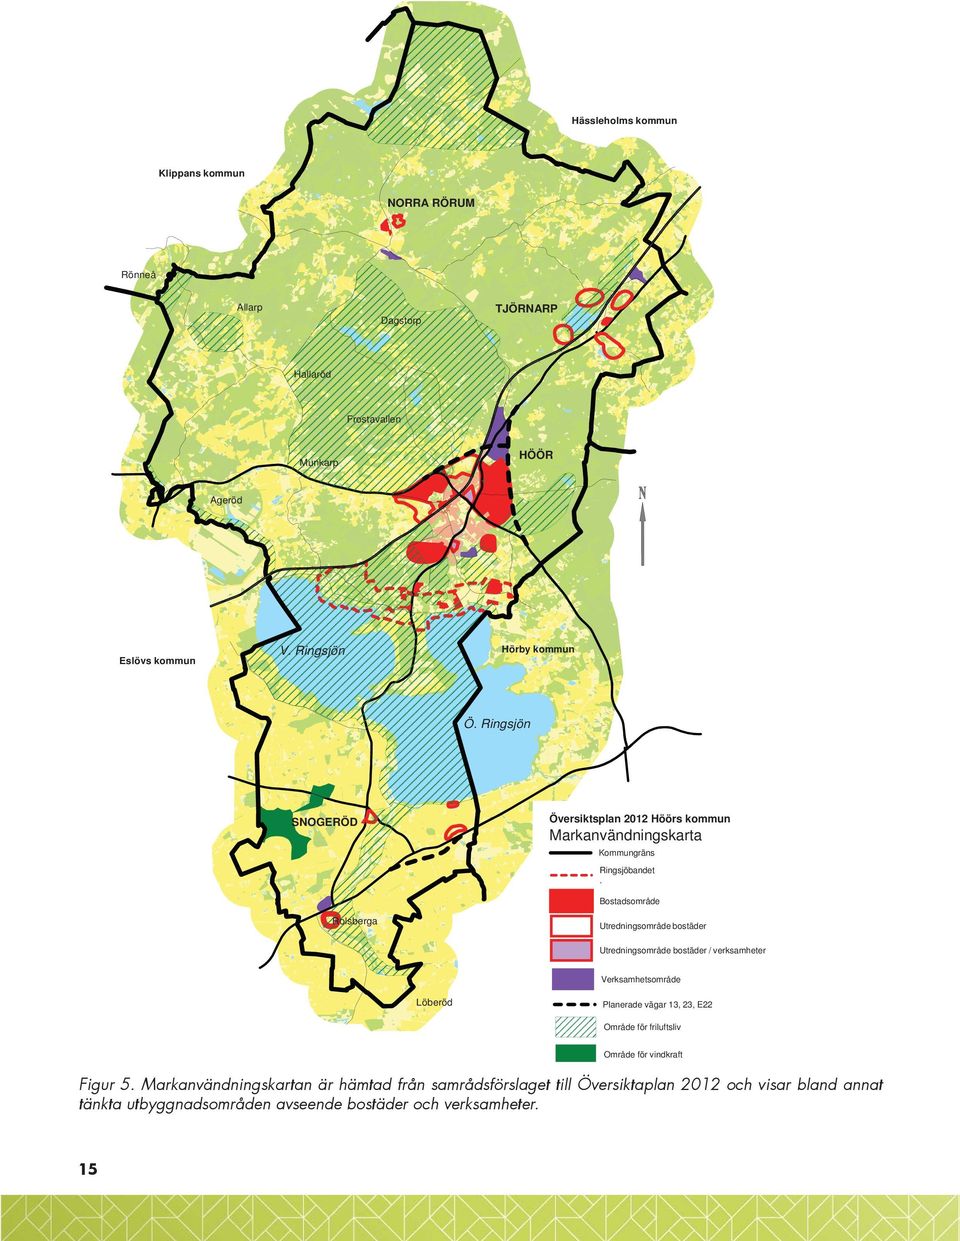 Bostadsområde Rolsberga Utredningsområde bostäder Utredningsområde bostäder / verksamheter Verksamhetsområde Löberöd Planerade vägar 13, 23, E22 Område för